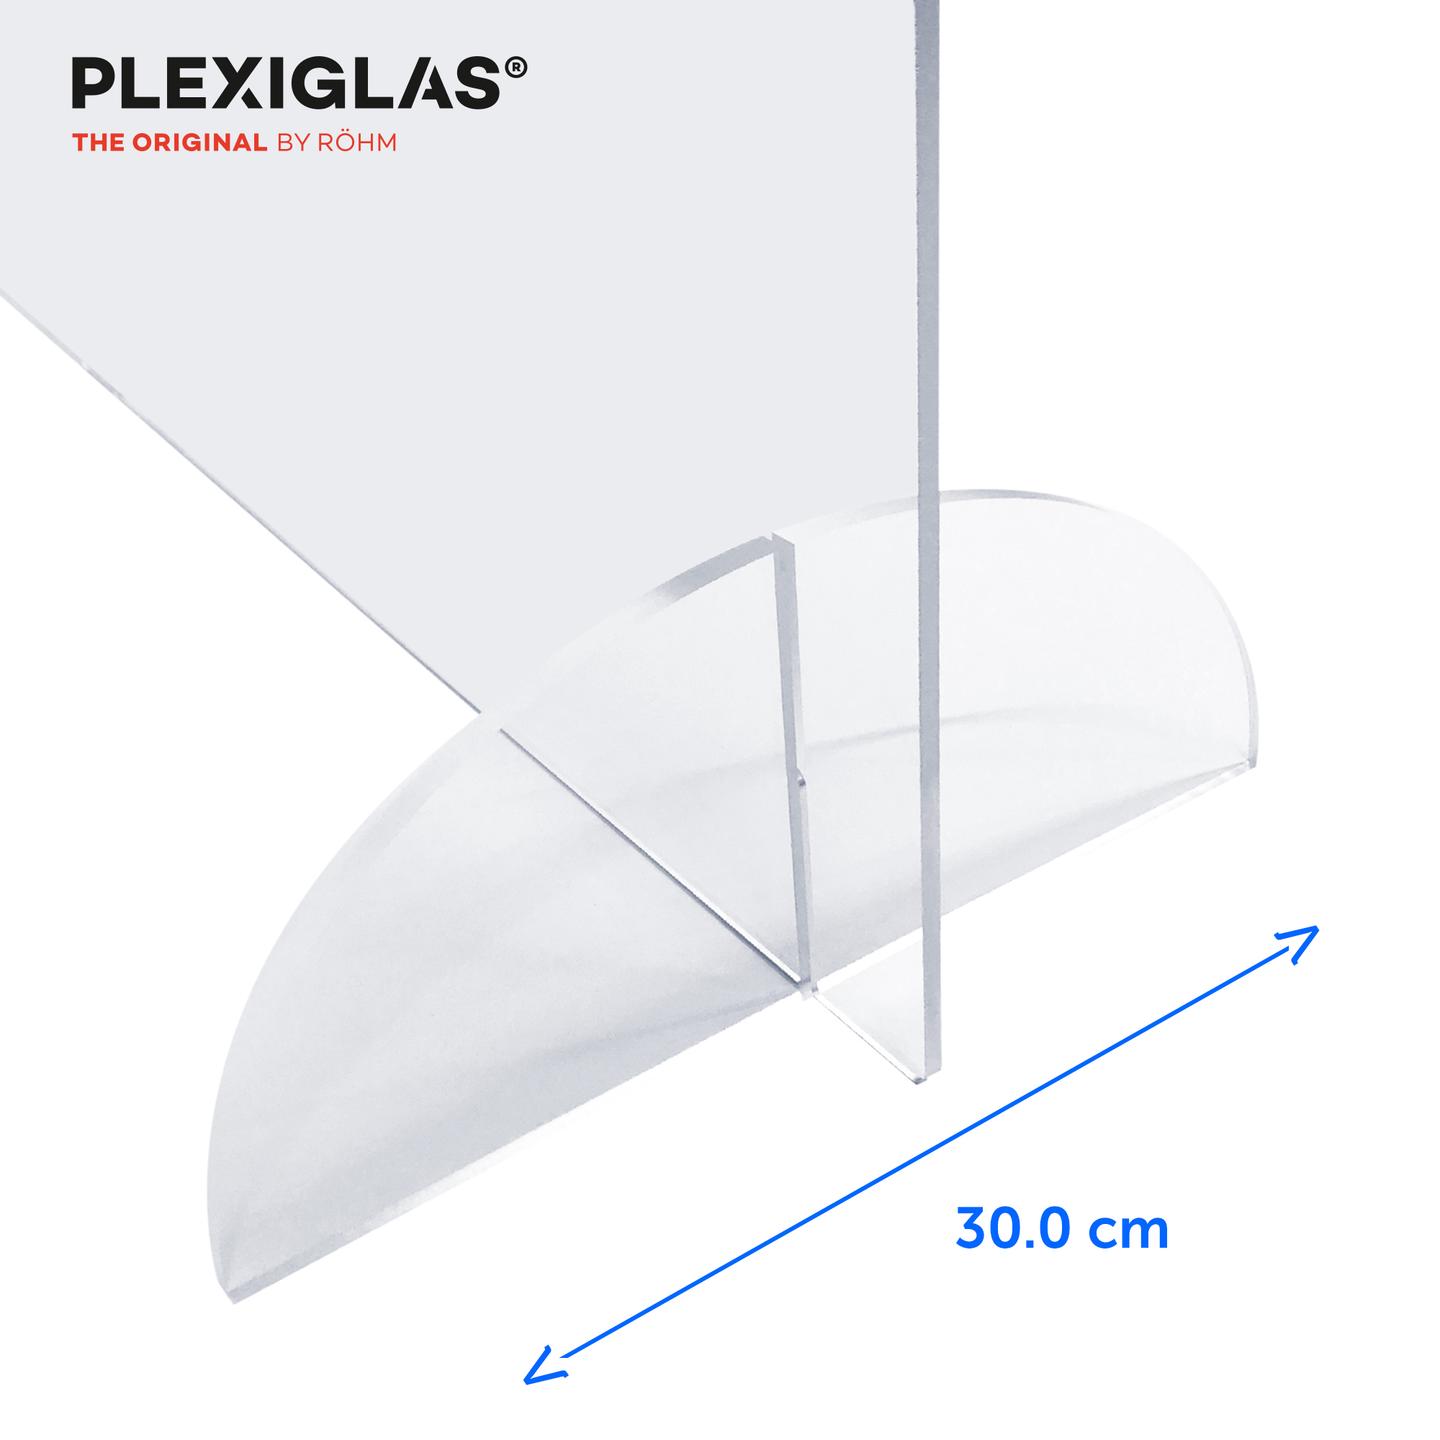 Schutzscheibe Spuckschutz Schutzwand Thekenaufsatz Plexiglas mit Durchreiche 